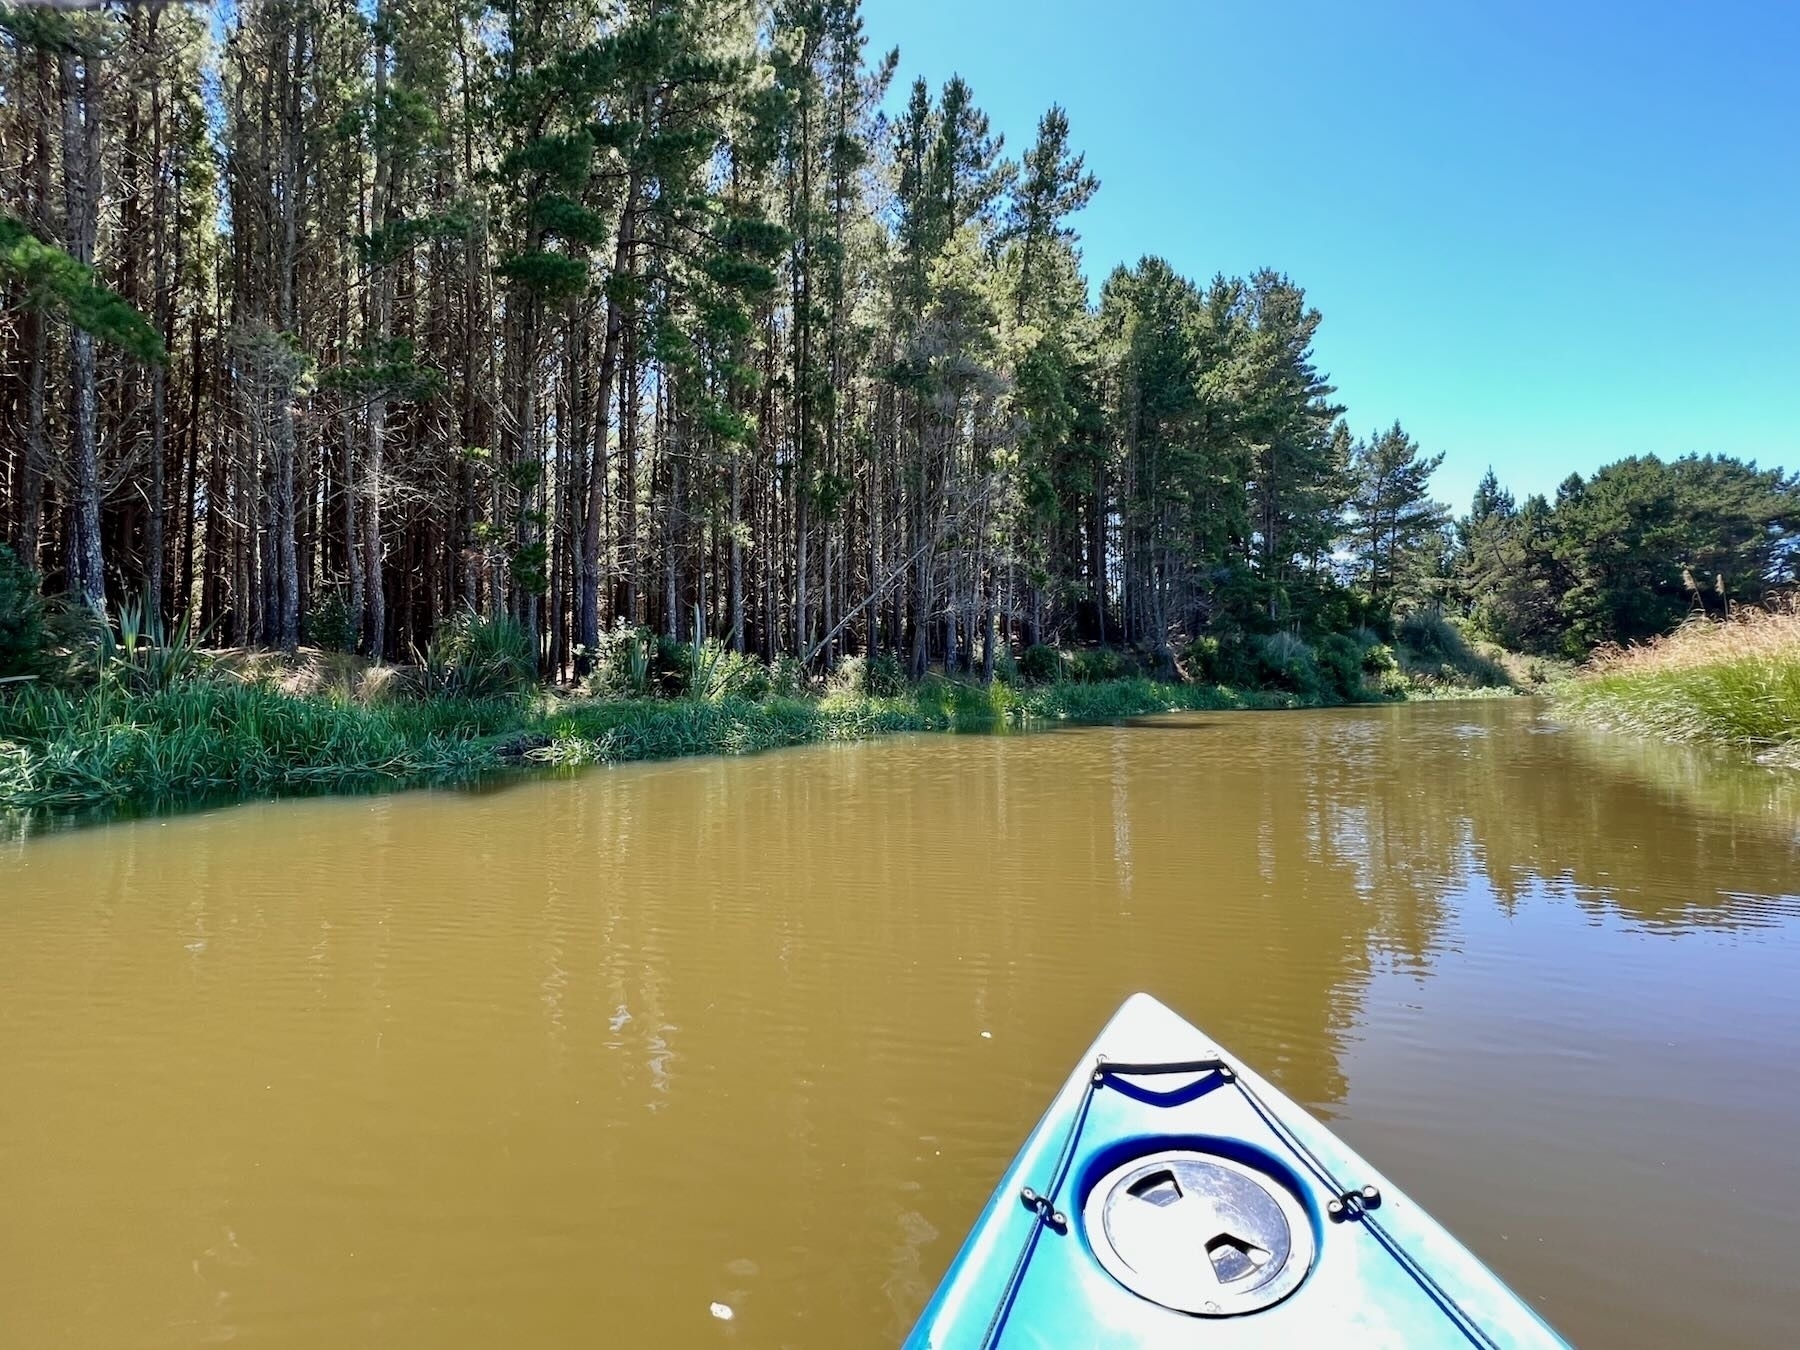 Trees, river and kayak prow. 